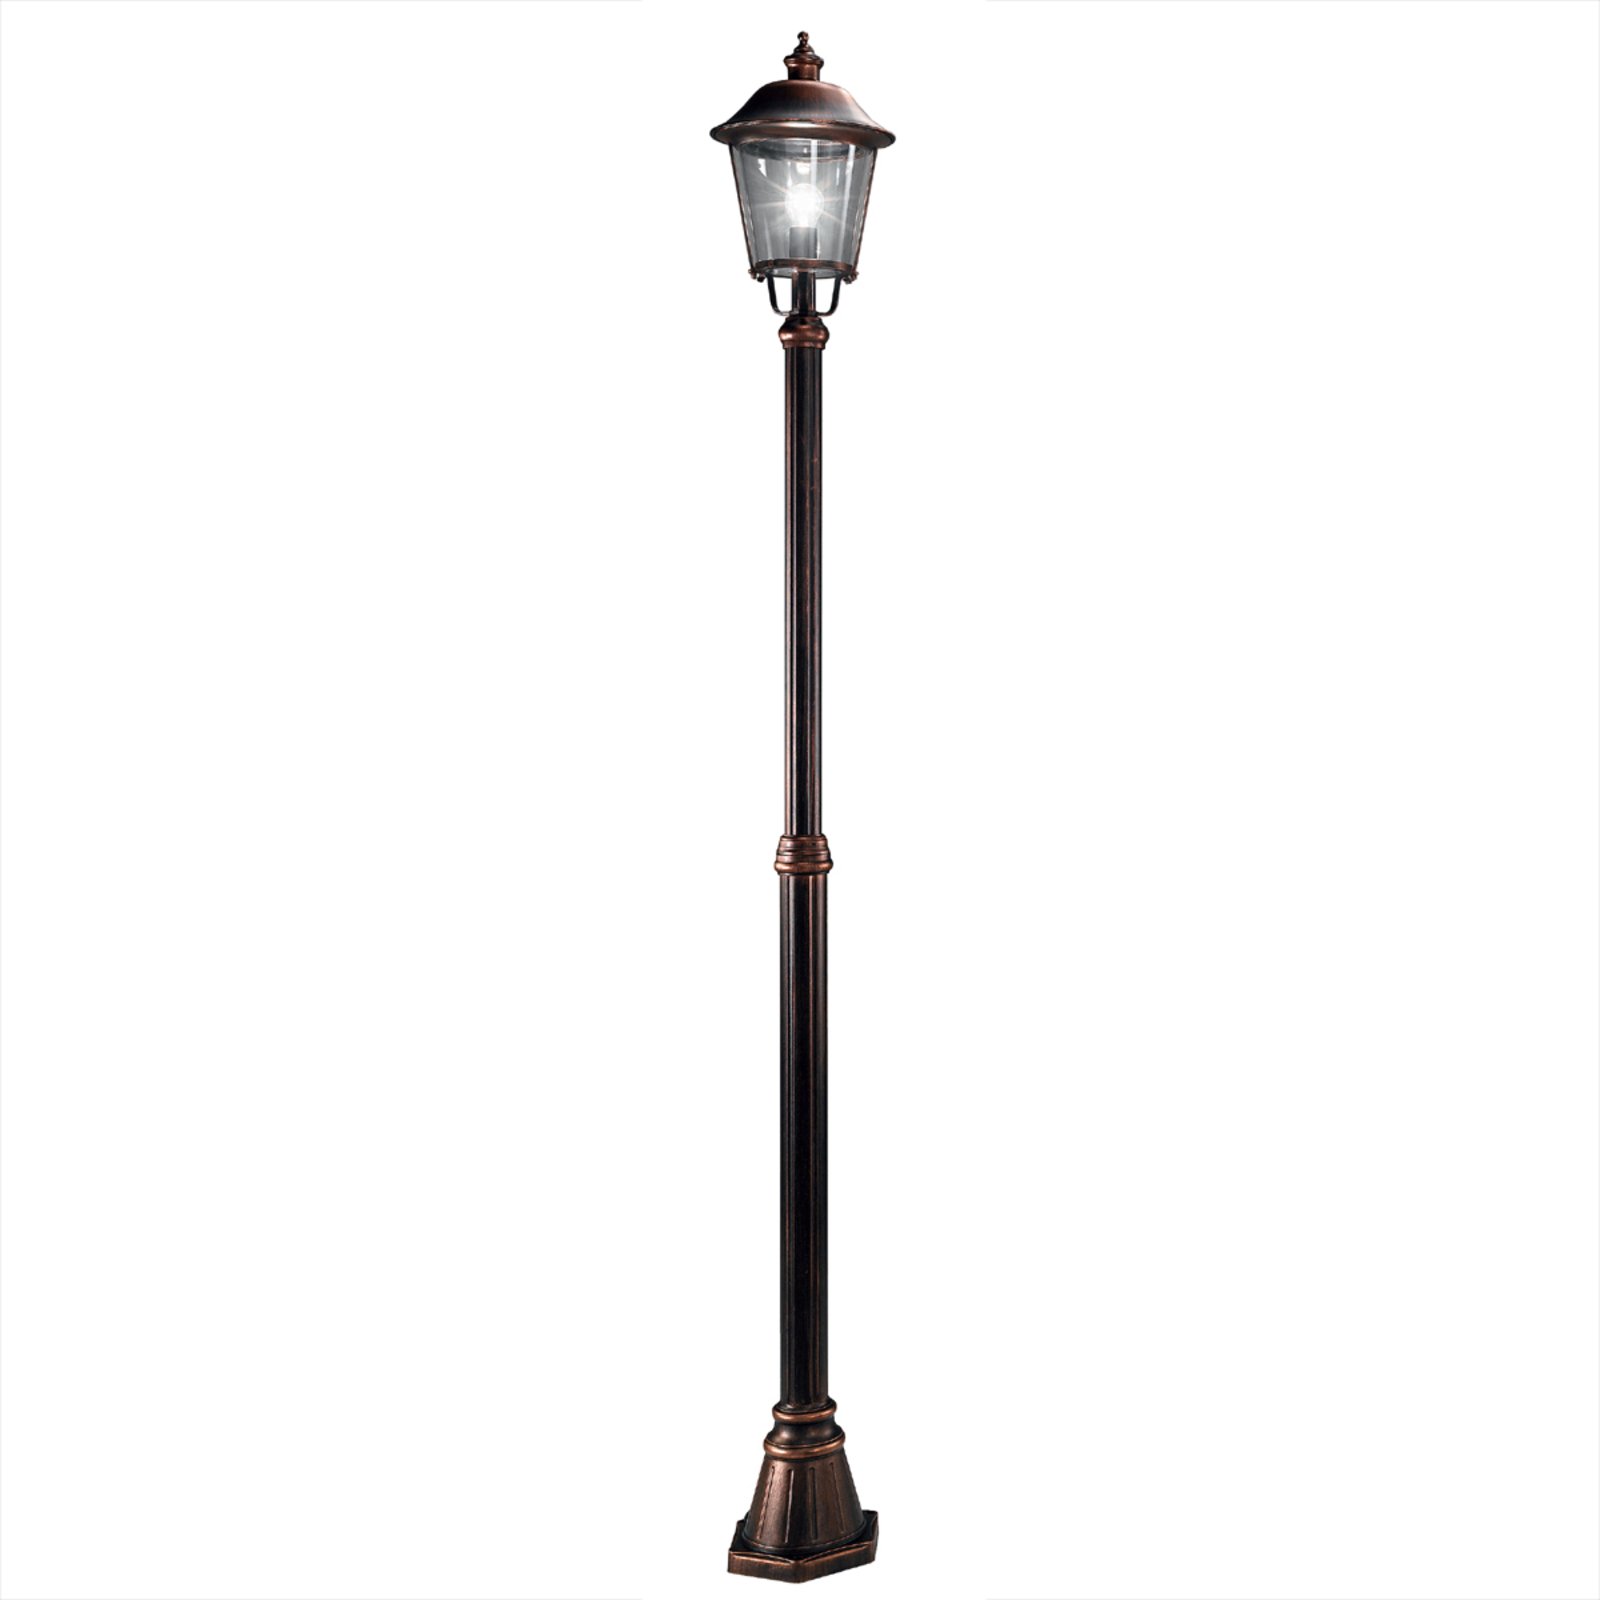 Mariella stolplampa med 1 lampa